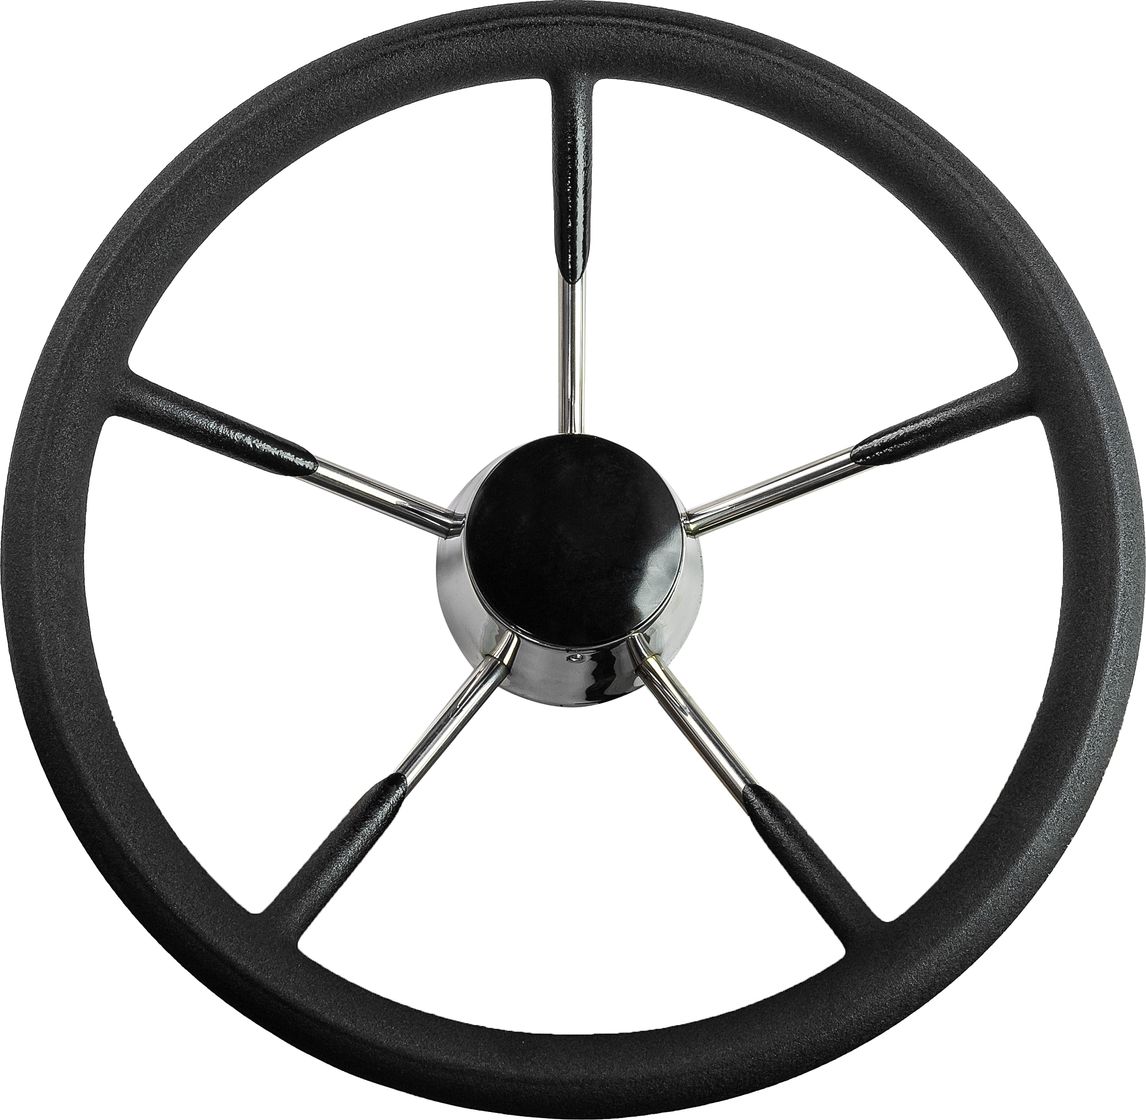 Рулевое колесо черный обод, стальные спицы, диаметр 340 мм 73053-01 рулевое колесо диаметр 320 мм 73055 01bu